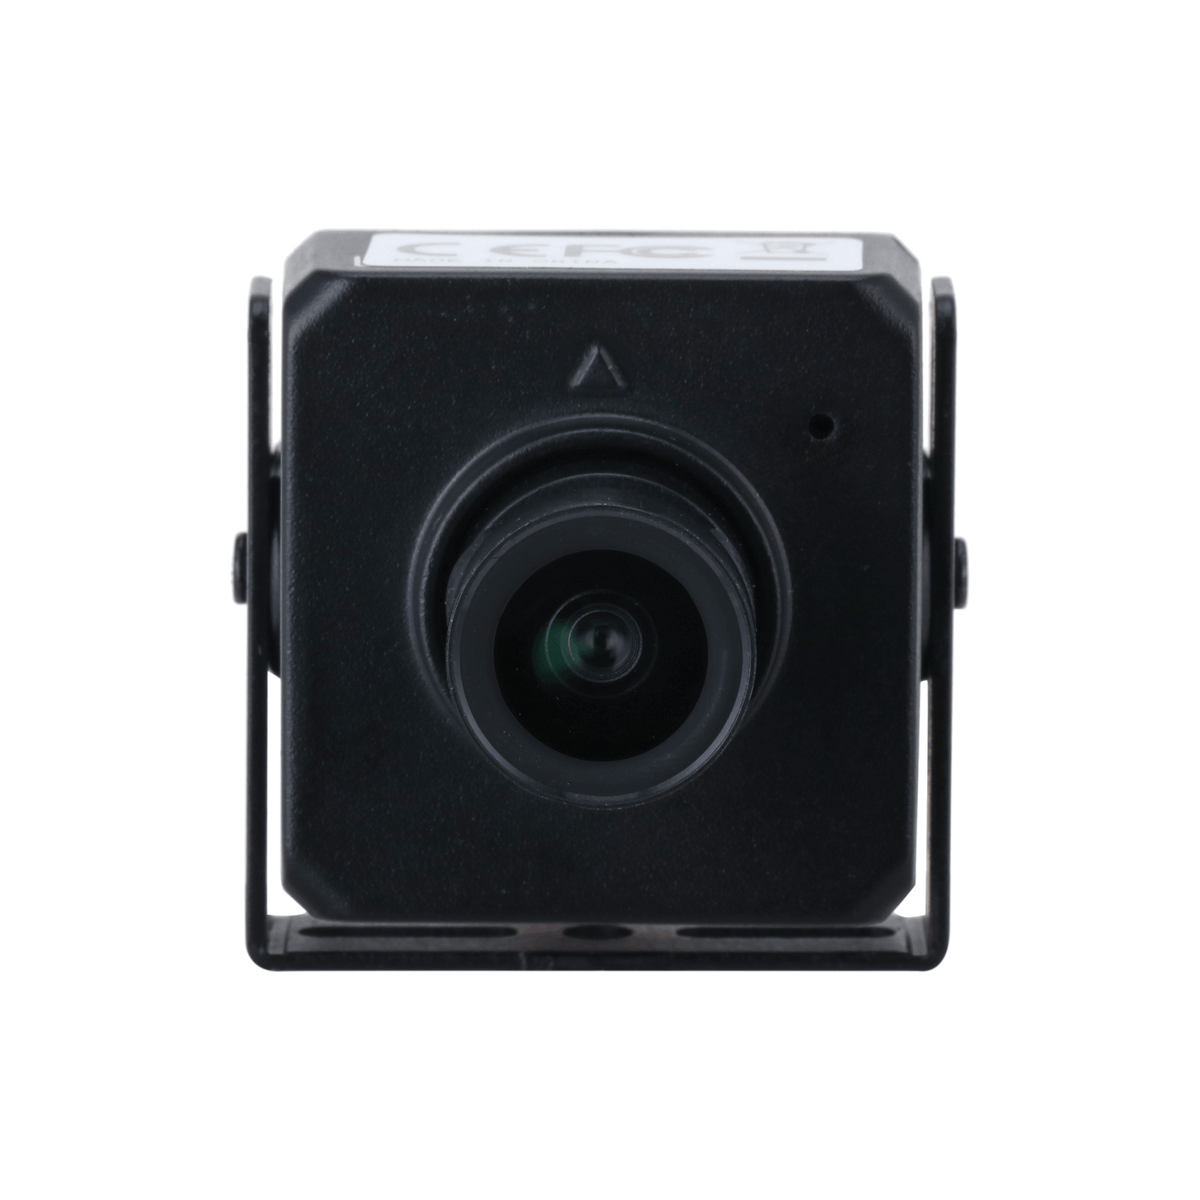 DAHUA IPC-HUM4431S-L5 4MP Fixed-focal Network Camera